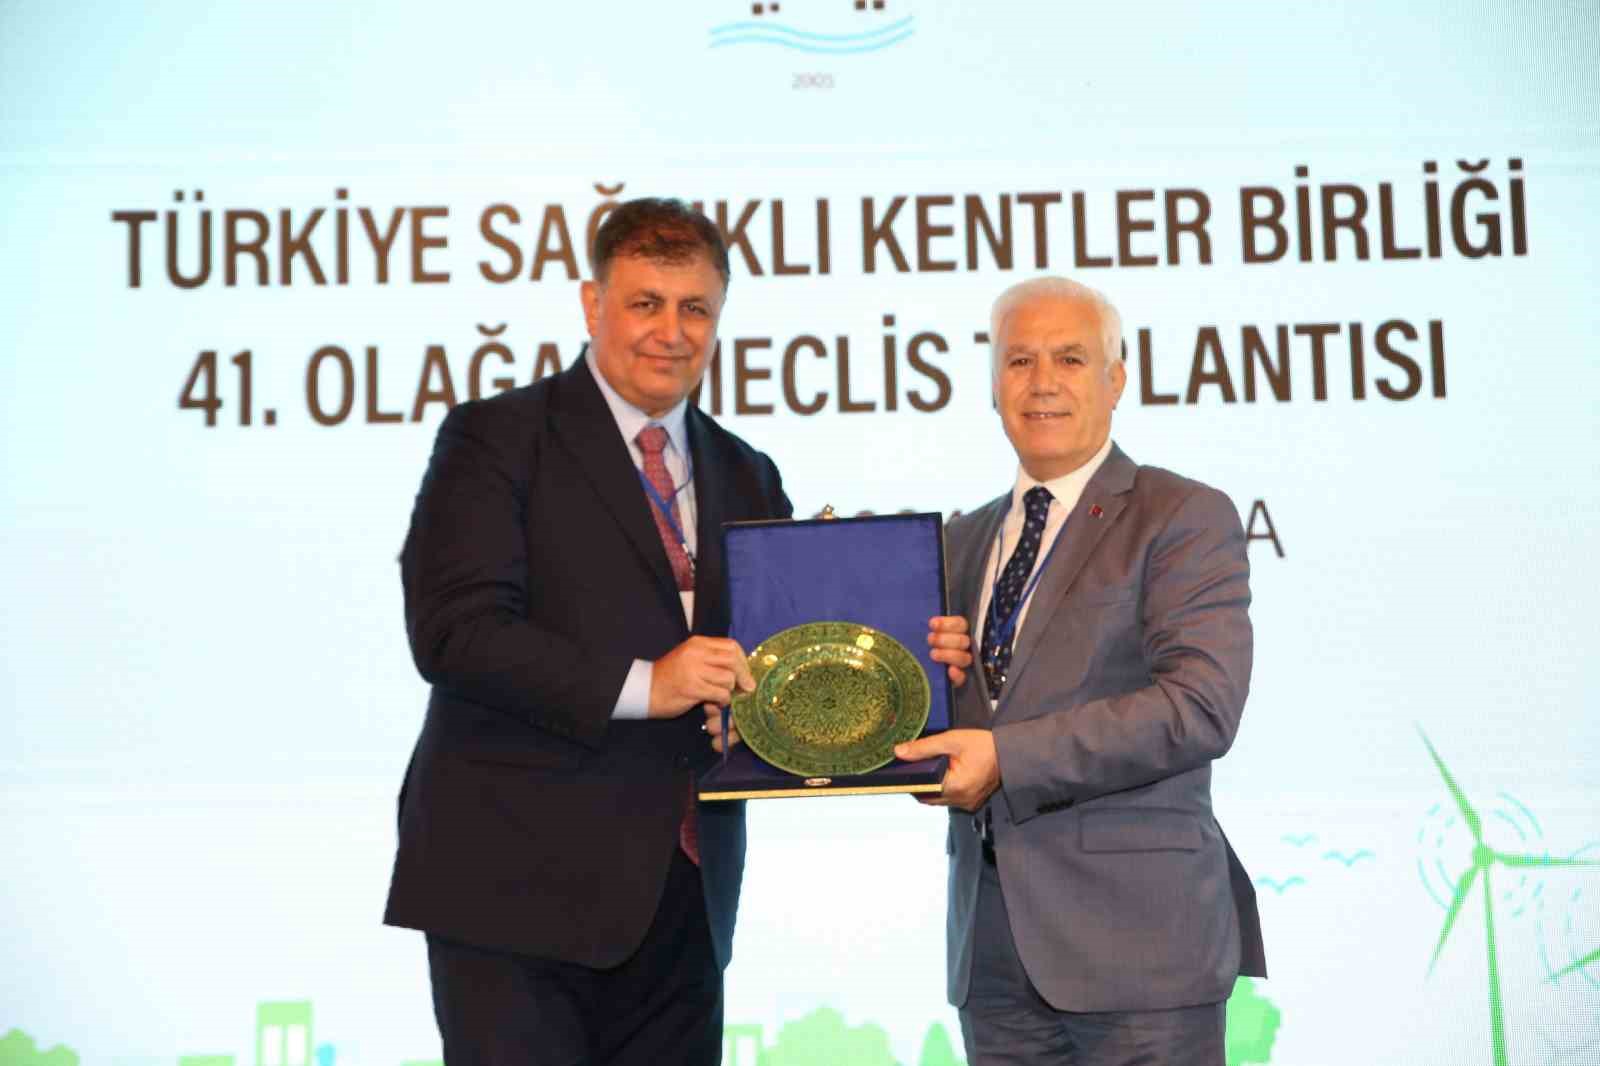 Sağlıklı Kentler Birliği Başkanına İzmir Büyükşehir Belediye Başkanı Cemil Tugay Seçildi